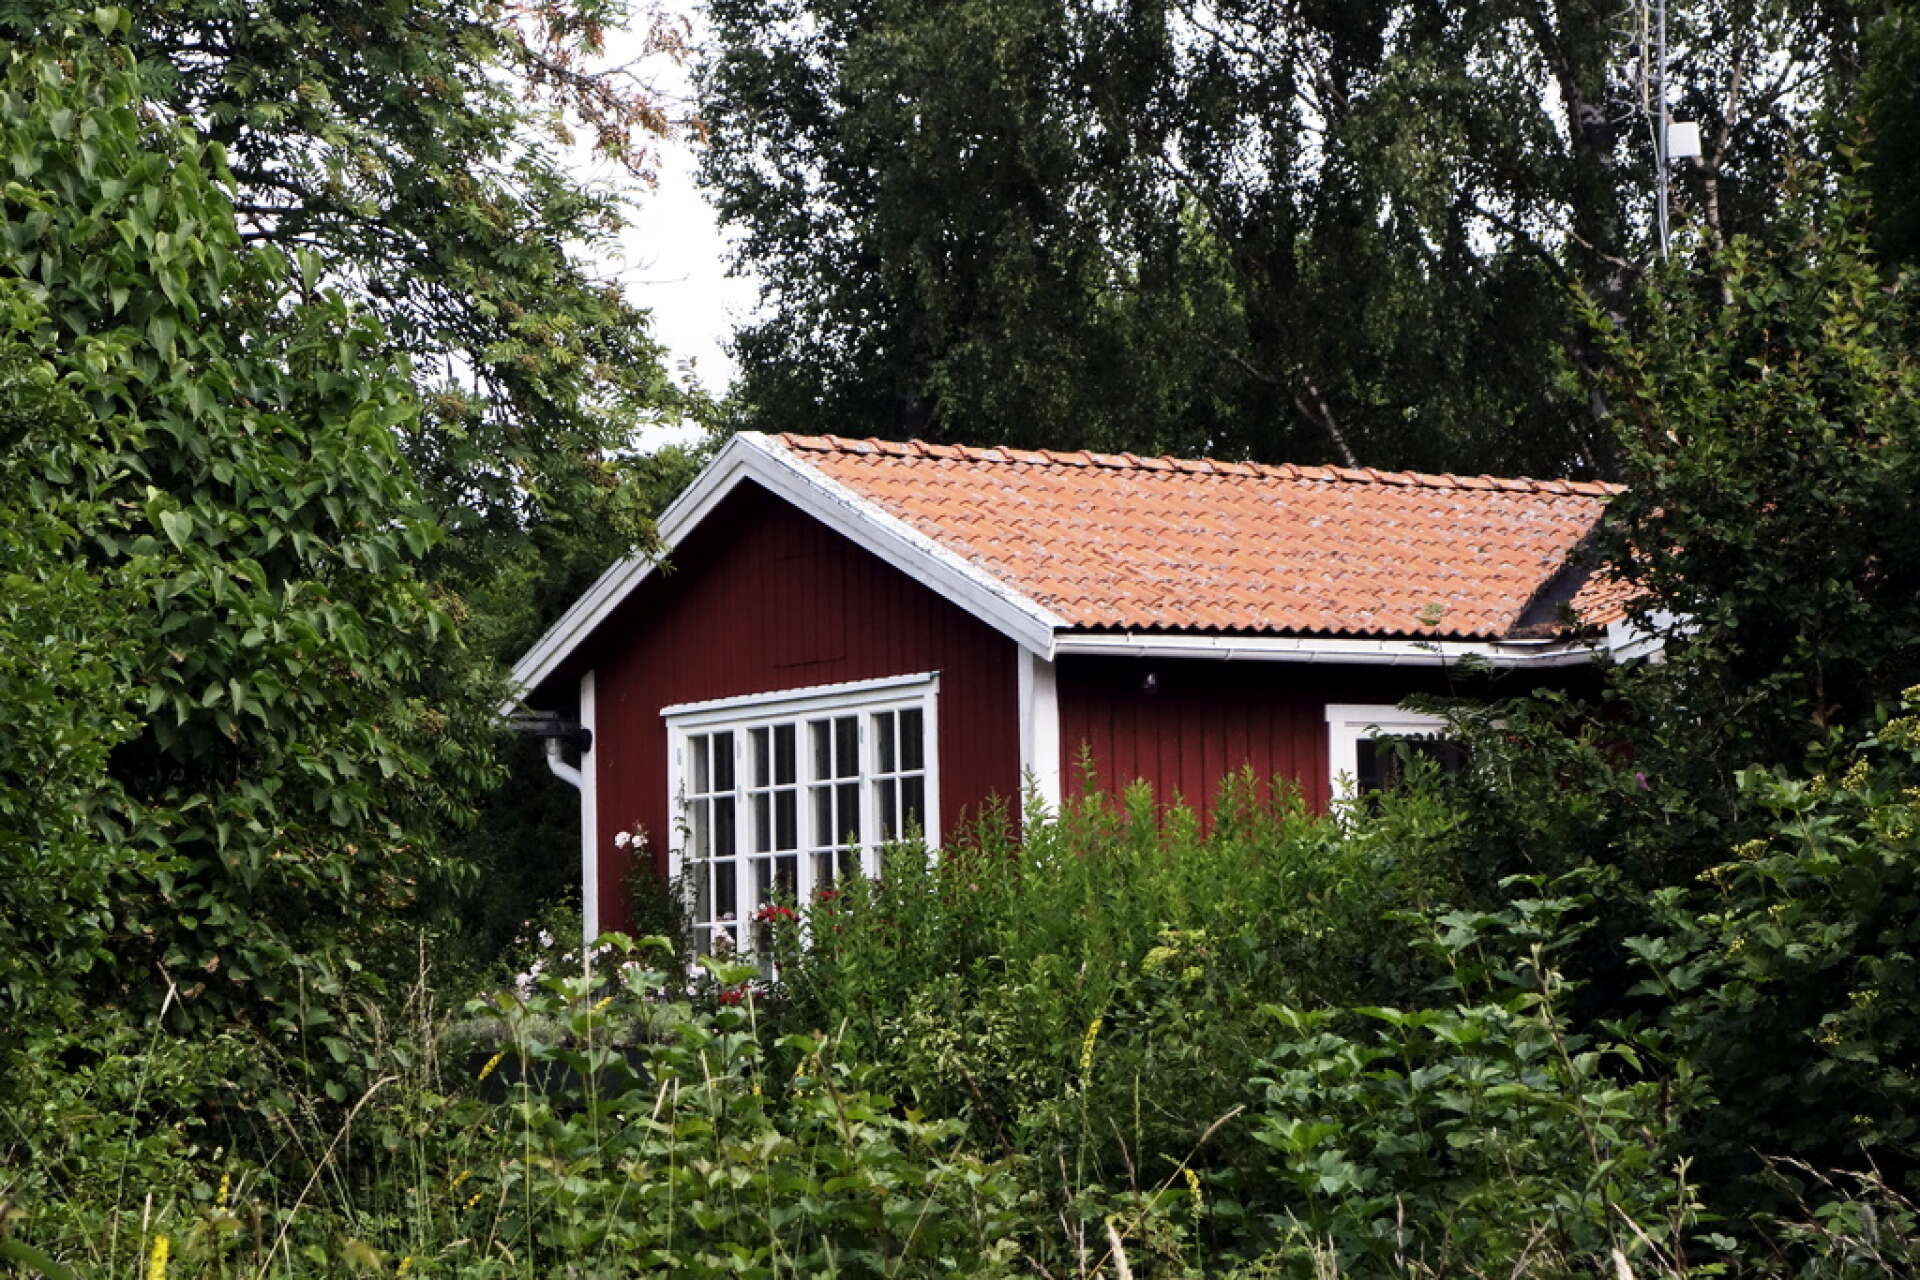 Norrmän planerar att besöka sina fritidshus i Sverige i sommar, trots att den norska regeringens avrådan. Arkivbild.